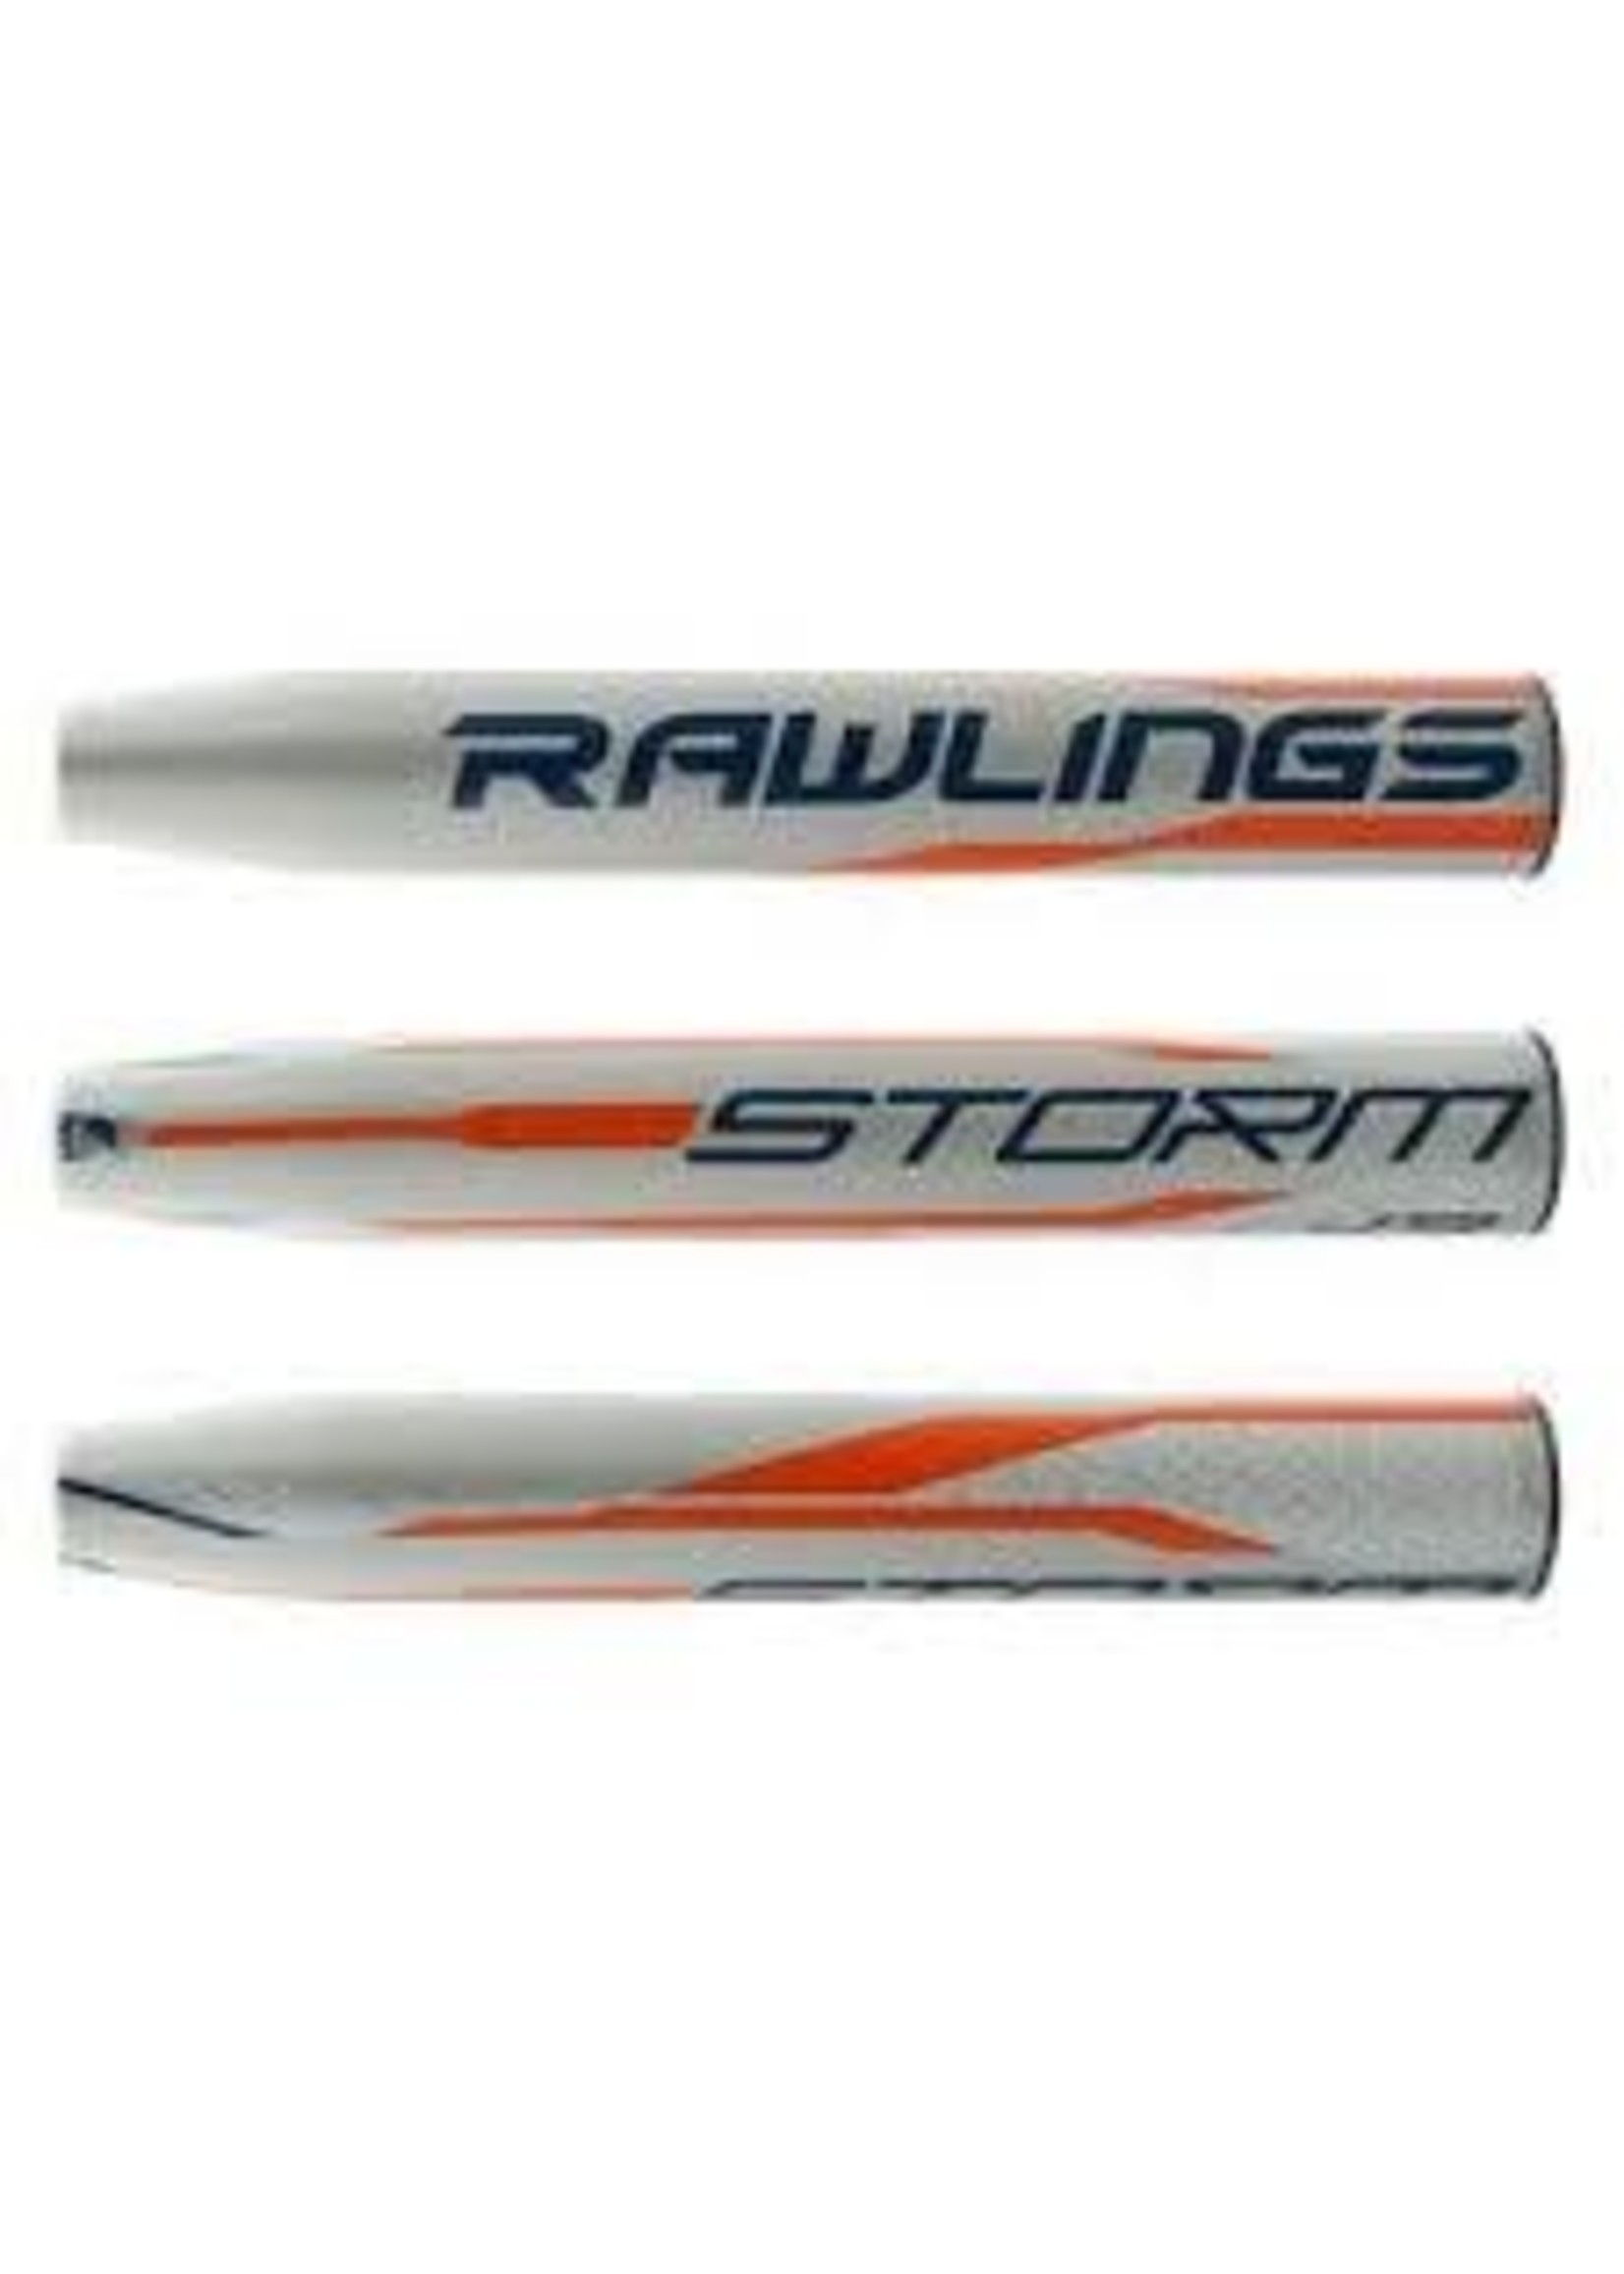 RAWLINGS Rawlings Storm Fastpitch Bat -13oz (2020)